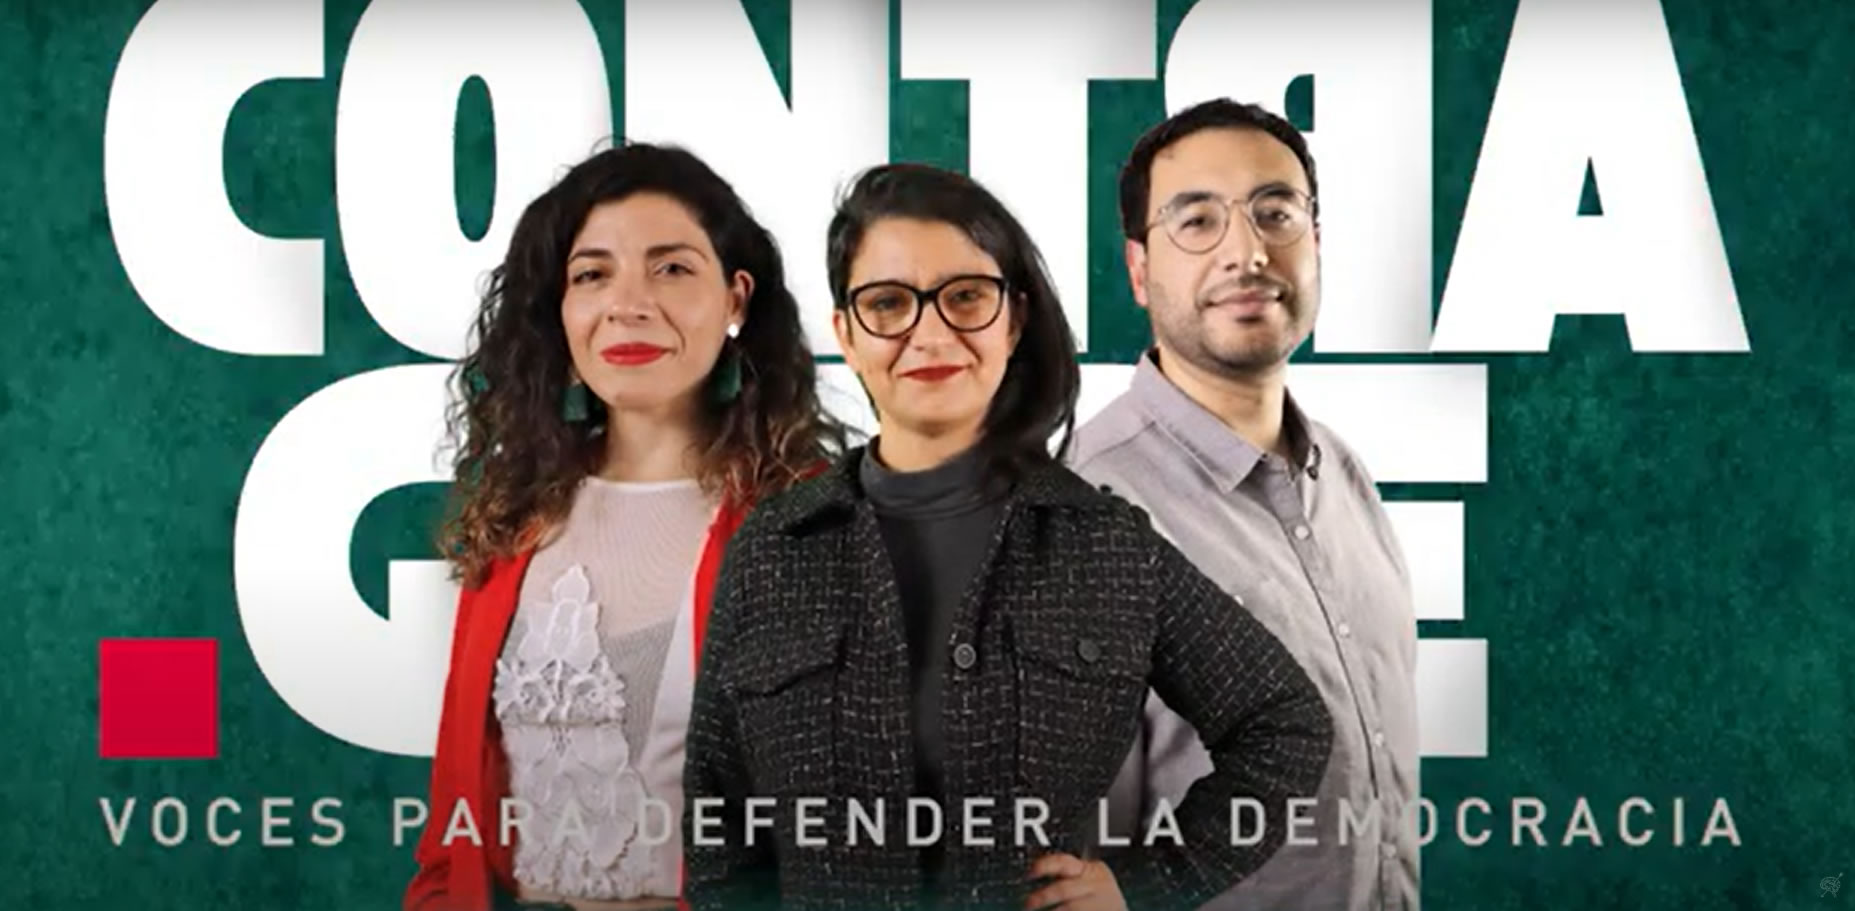 Tensionados por la radicalización y una relación compleja con la democracia: Nuevo capítulo de podcast «Contragolpe» aborda crisis de los proyectos de Derecha en Chile